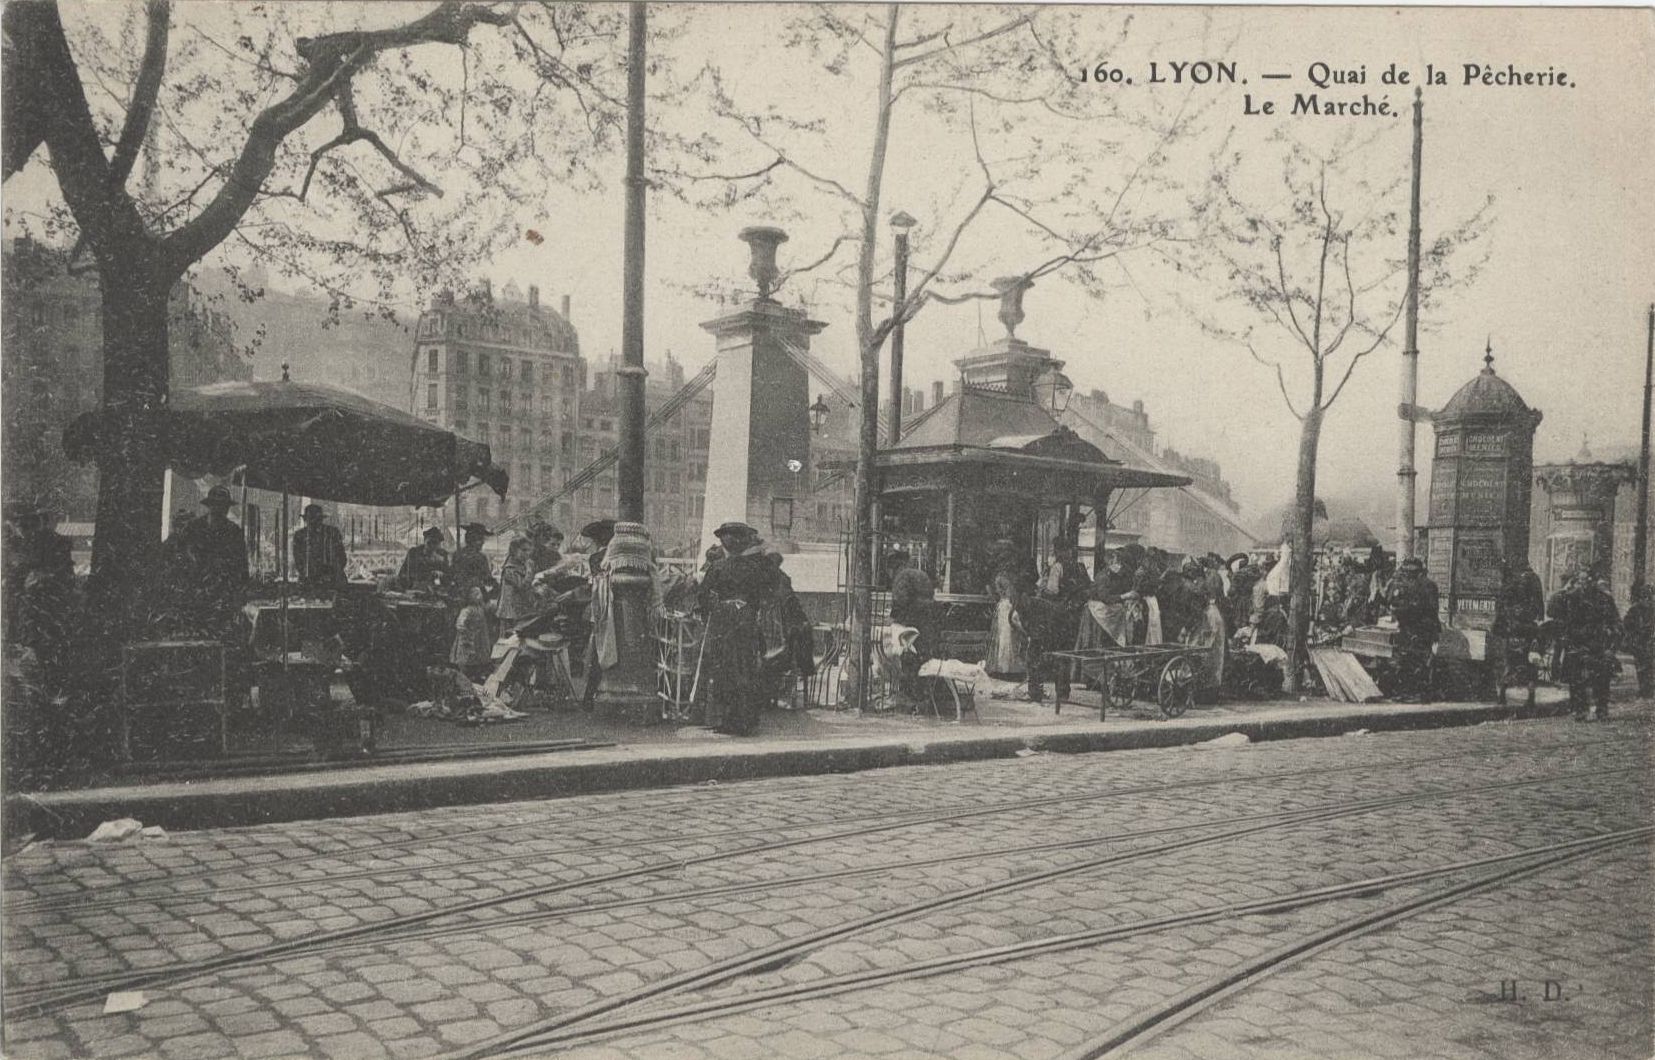 Marché sur le quai de la Pêcherie : carte postale NB (vers 1910, cote : 4FI/4093)